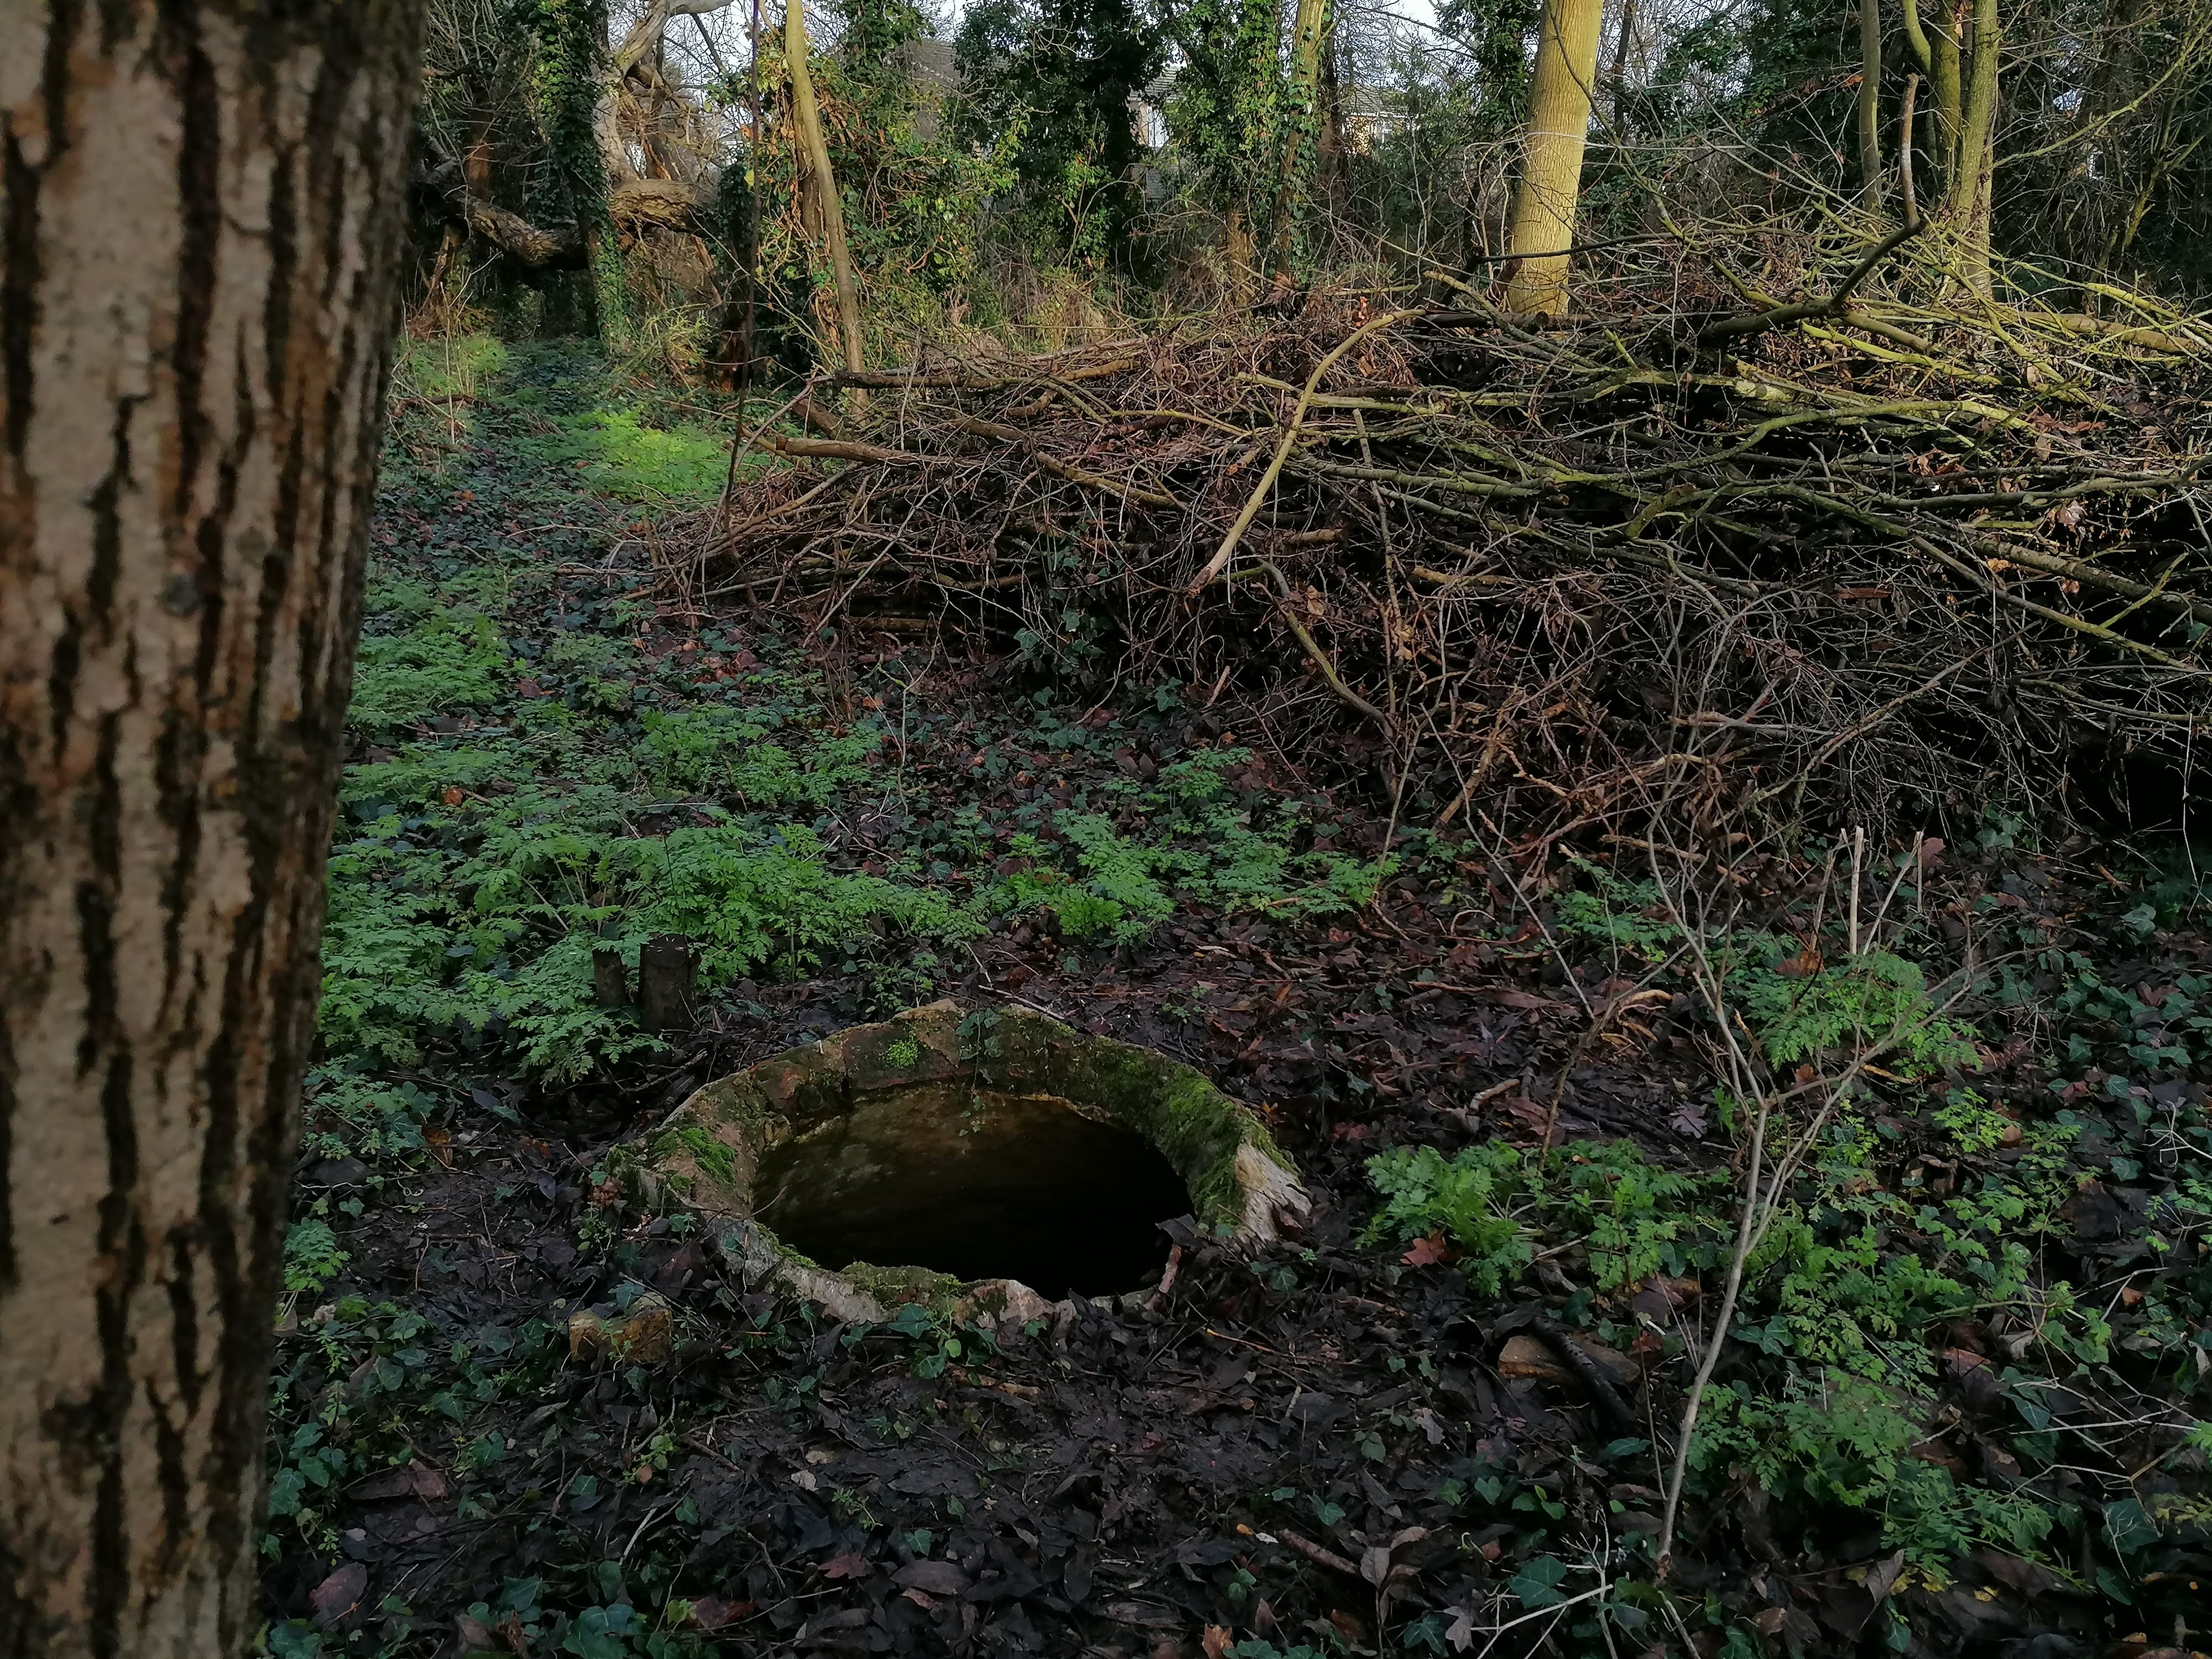 Willow's Hidden Well